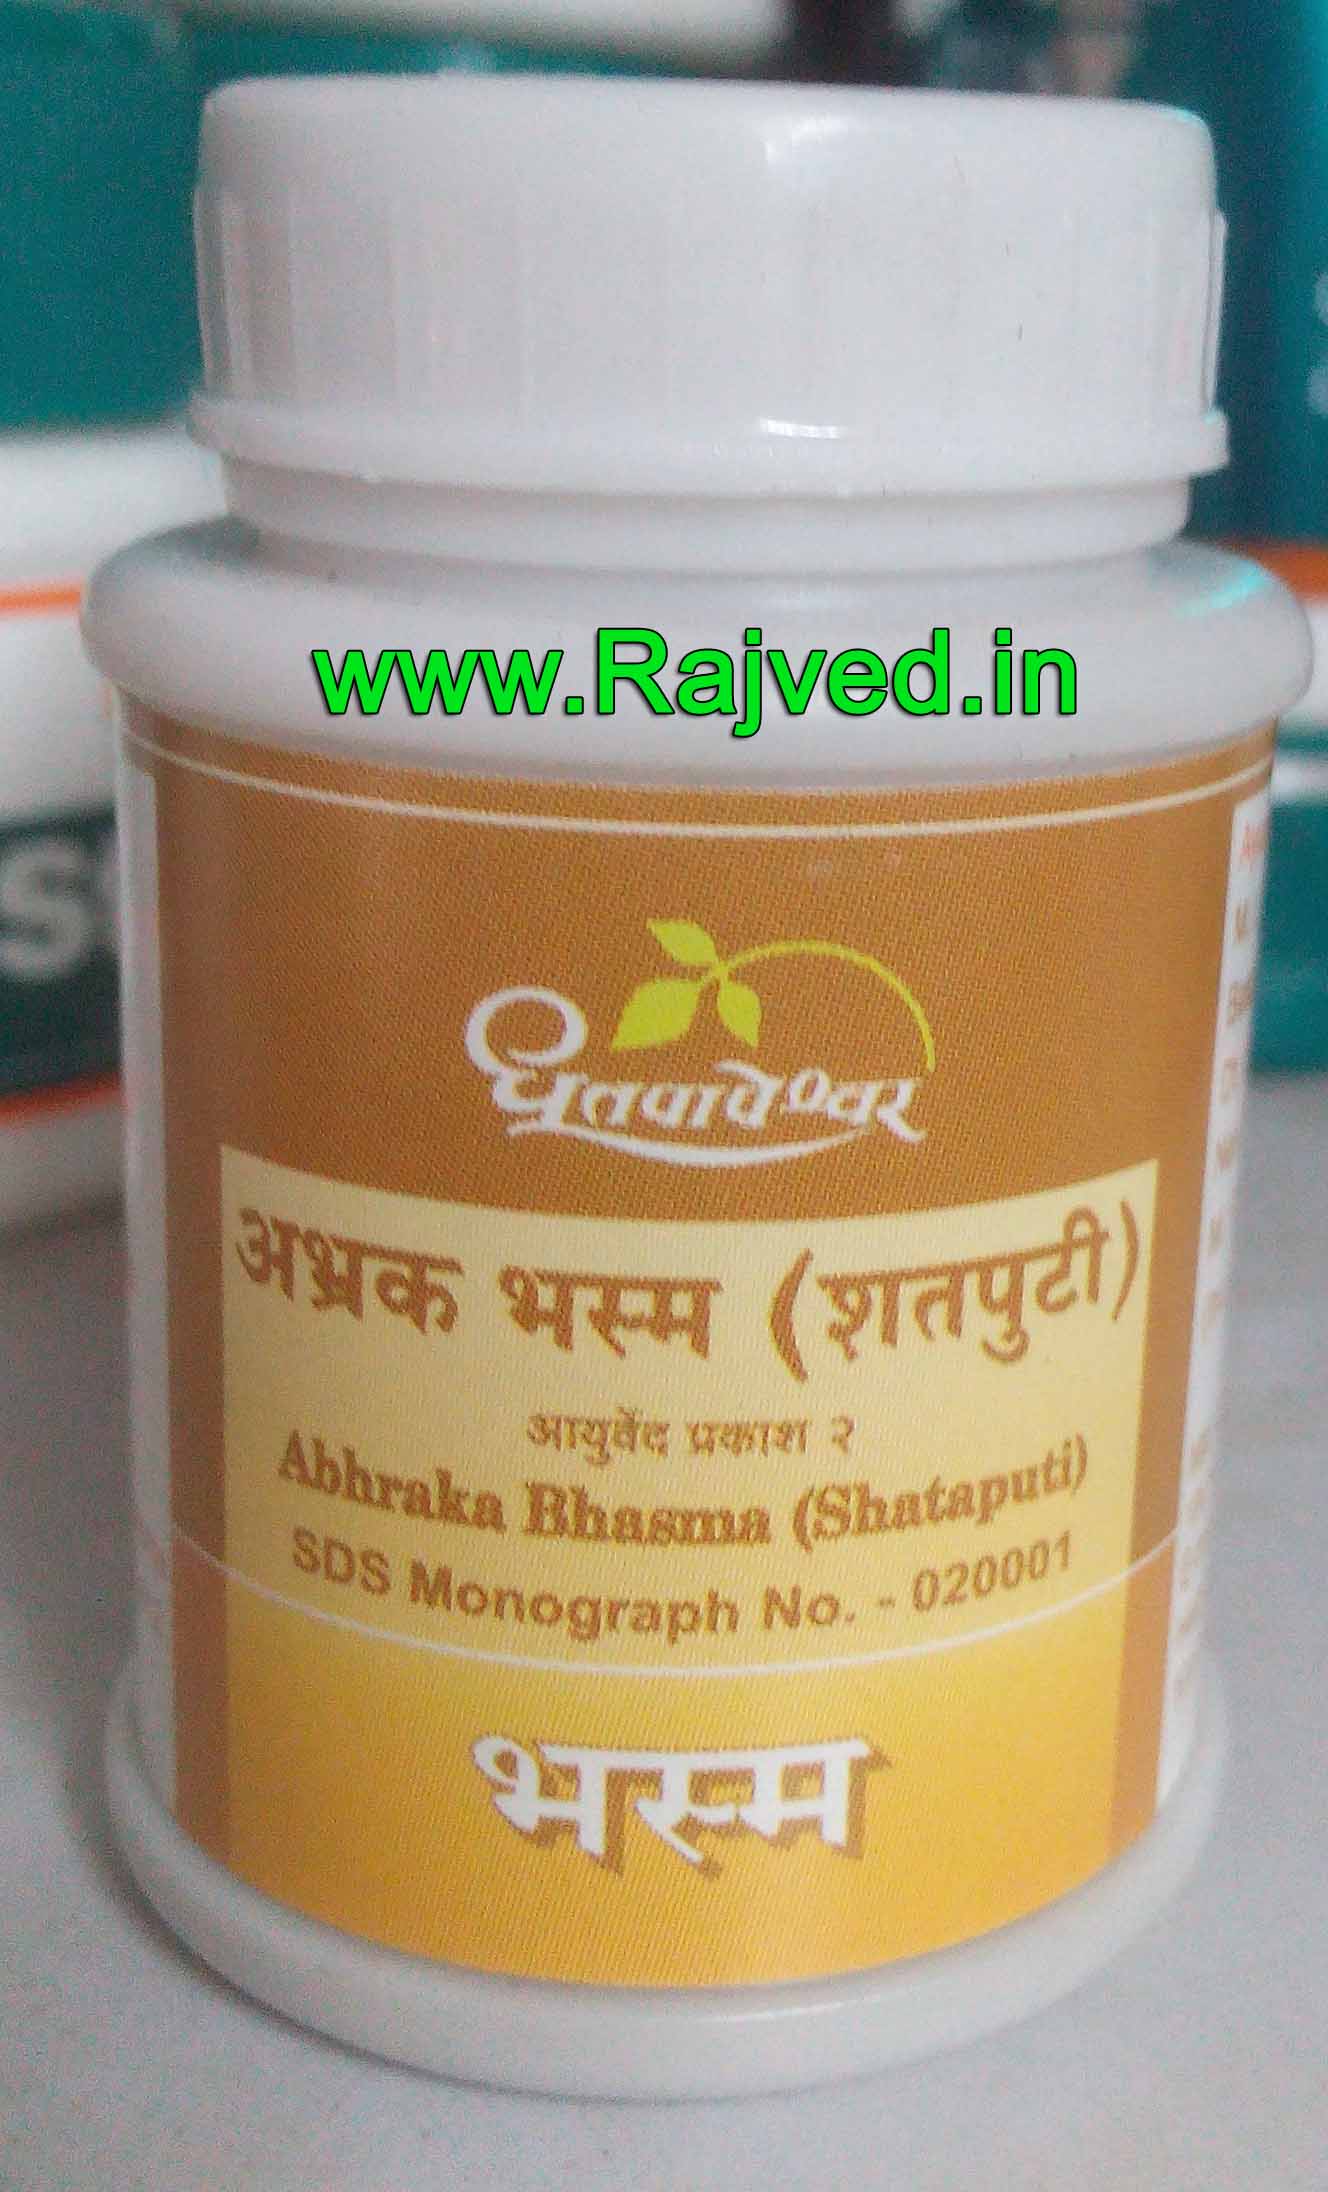 abhraka bhasma shataputi 10gm upto 20% off shree dhootpapeshwar panvel